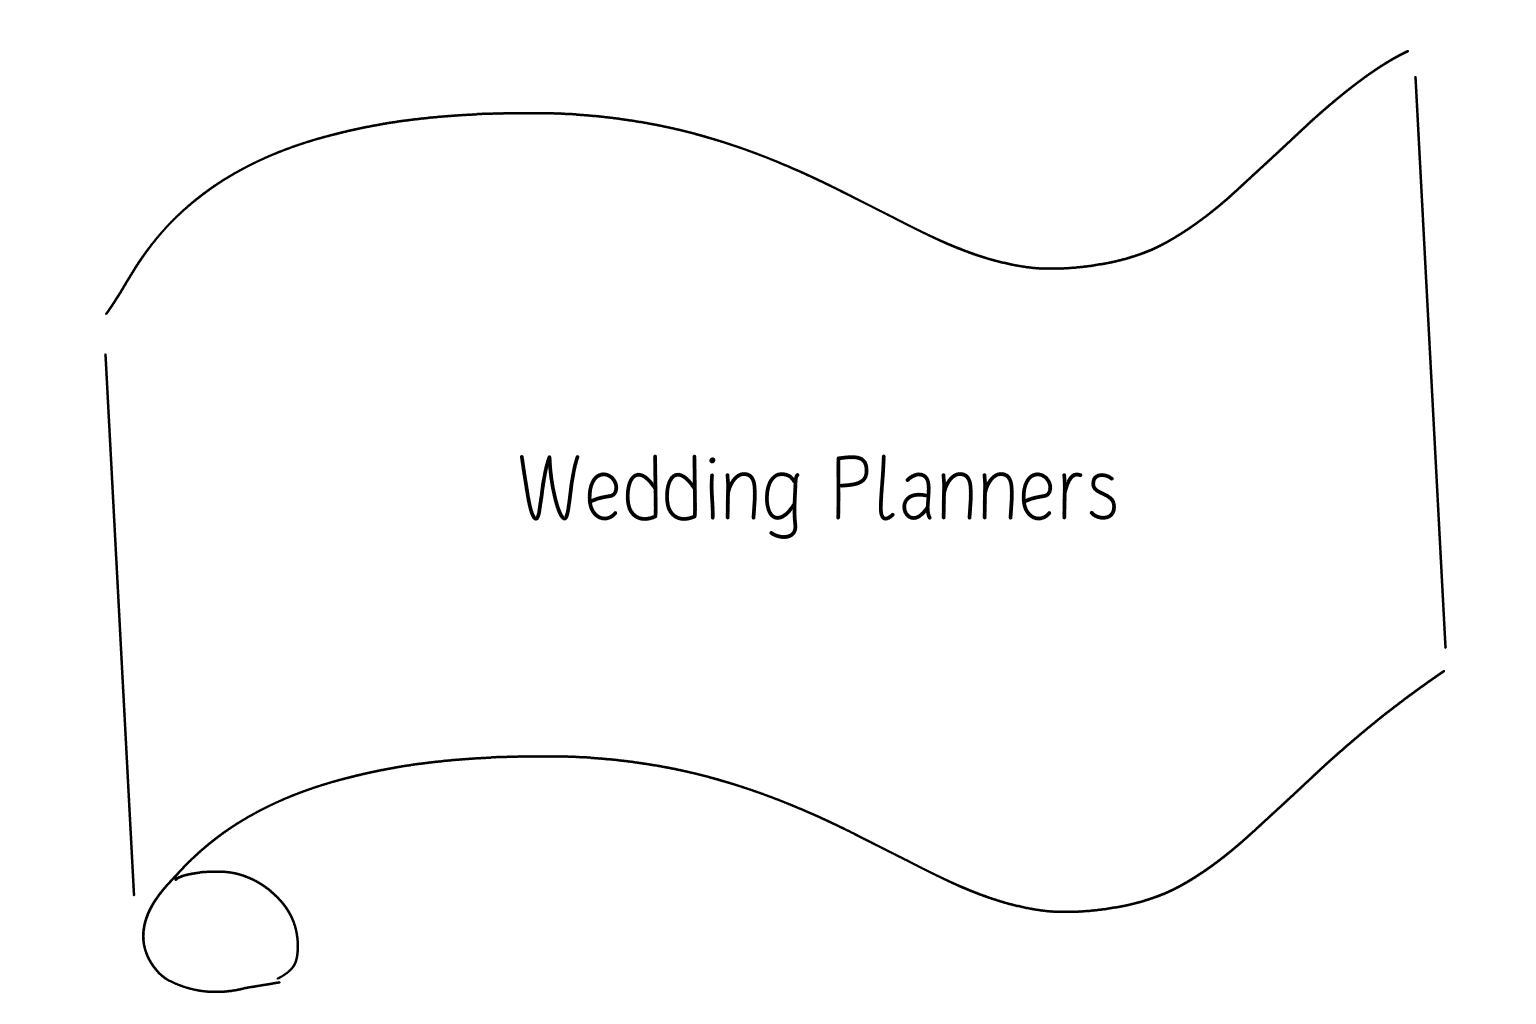 Ilustrace svatby Svatební plánovači